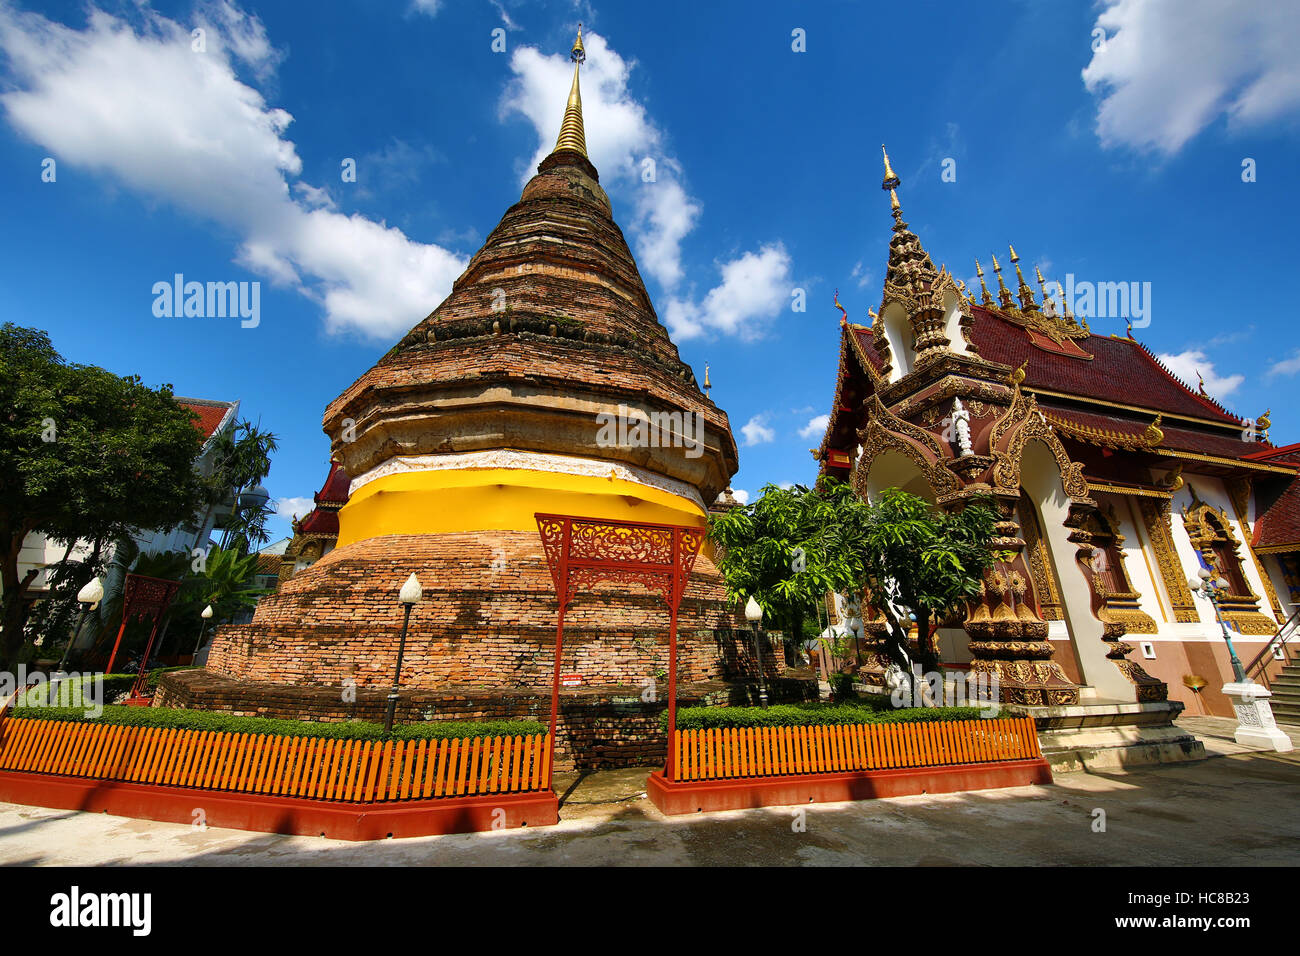 Wat Saen Muang Ma Luang (Wat Hua Khuang) Temple in Chiang Mai, Thailand Stock Photo